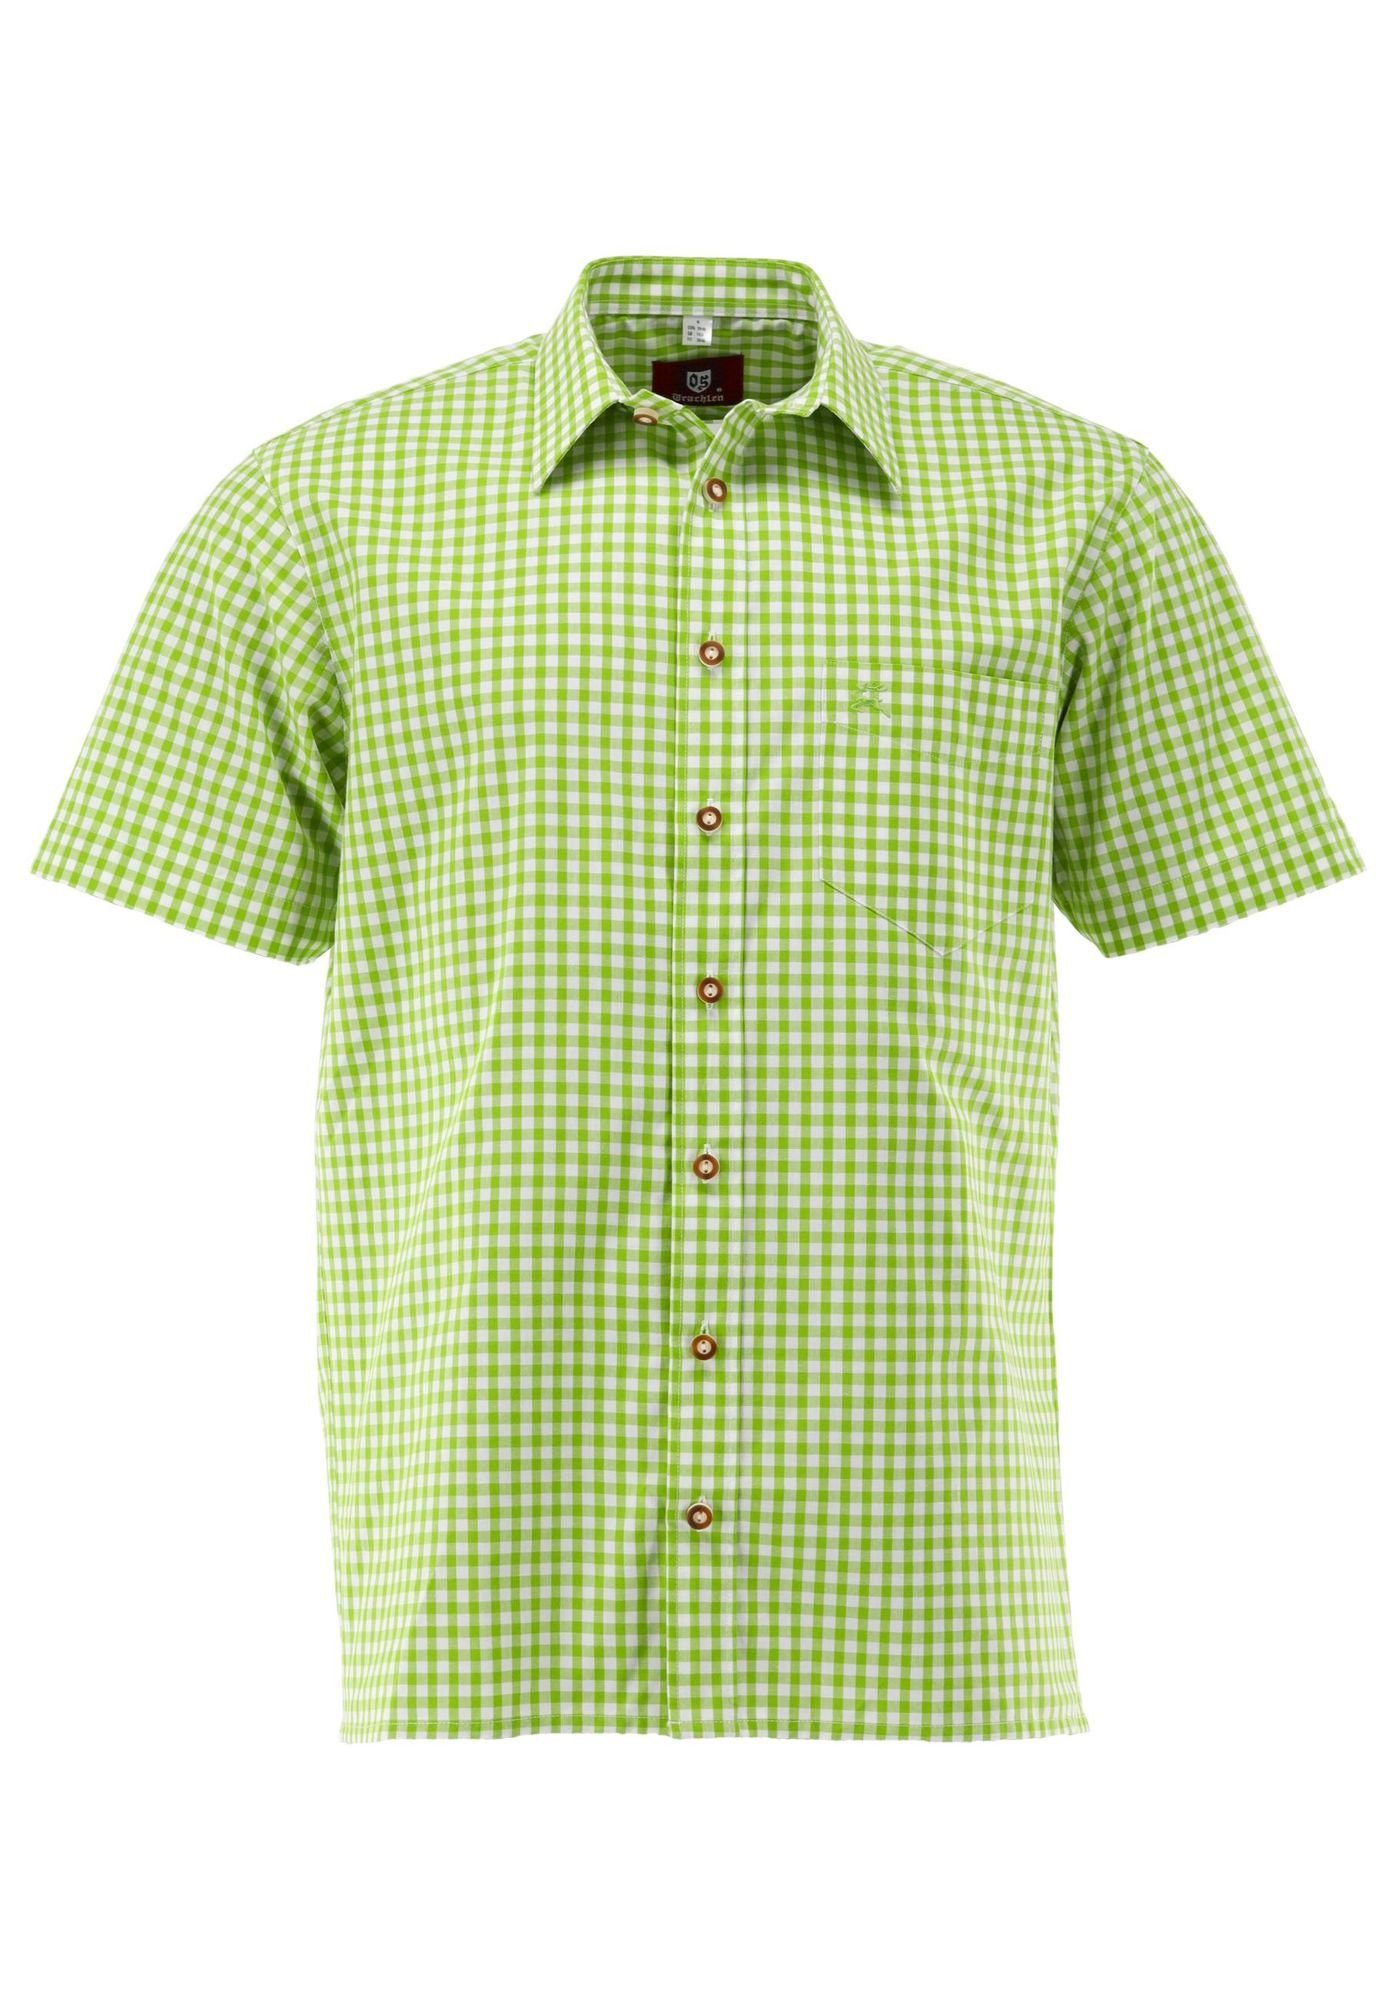 mit Hirsch-Stickerei aufgesetzter OS-Trachten Zihul Trachtenhemd giftgrün mit Brusttasche Kurzarmhemd